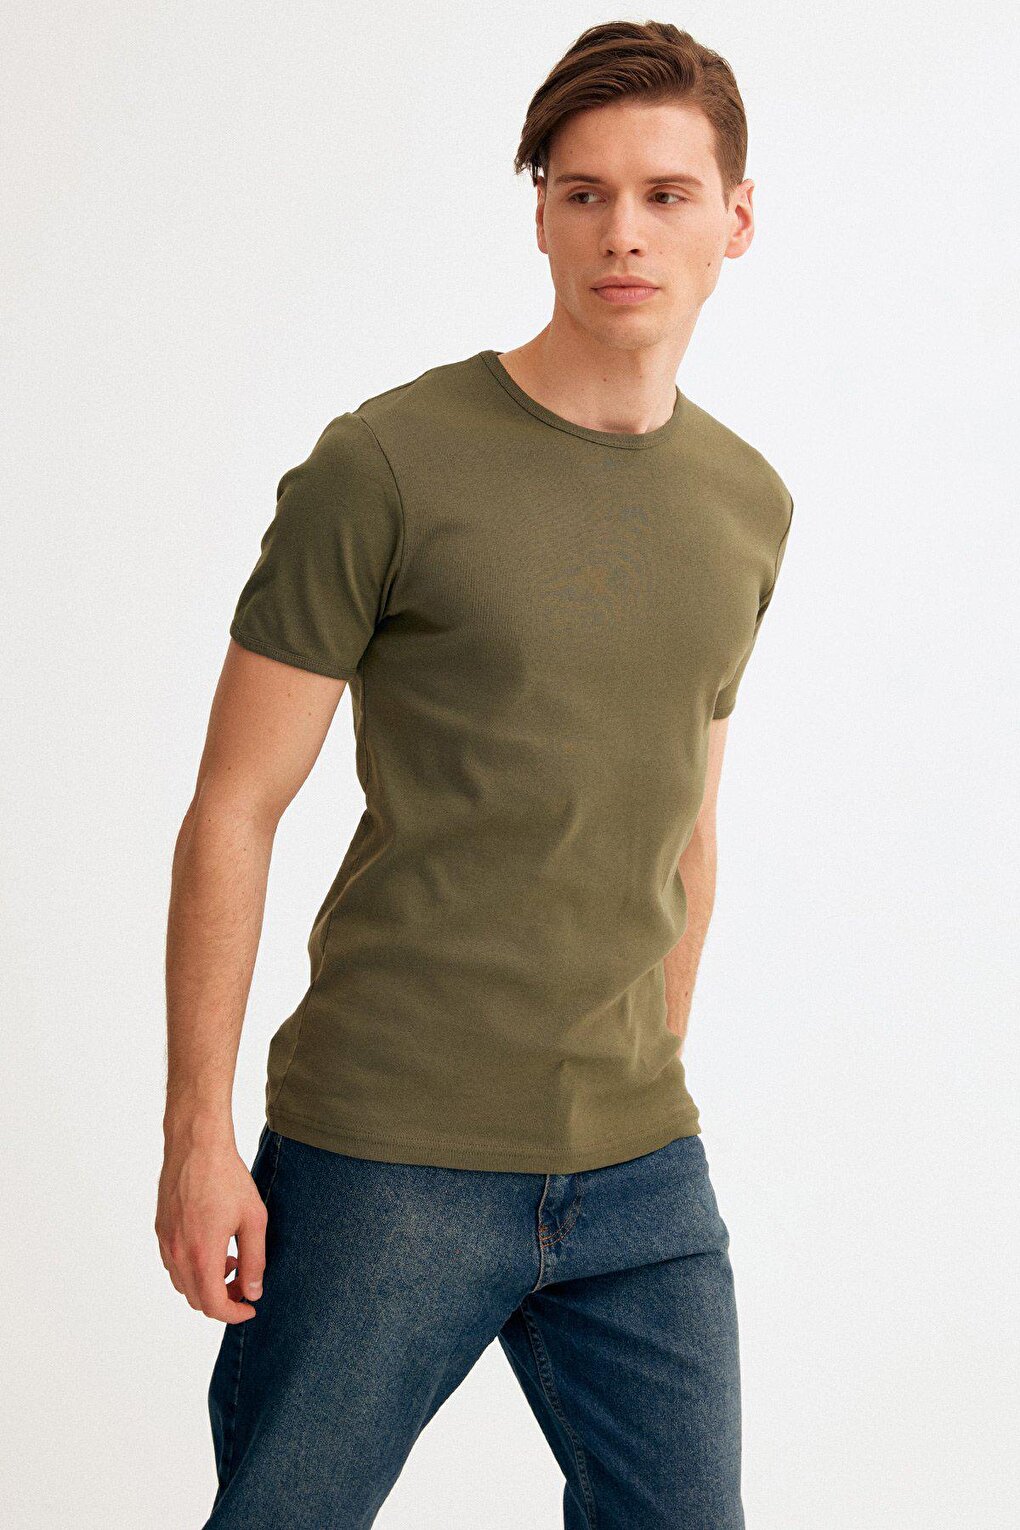 Базовая футболка с круглым вырезом Fullamoda, хаки фото